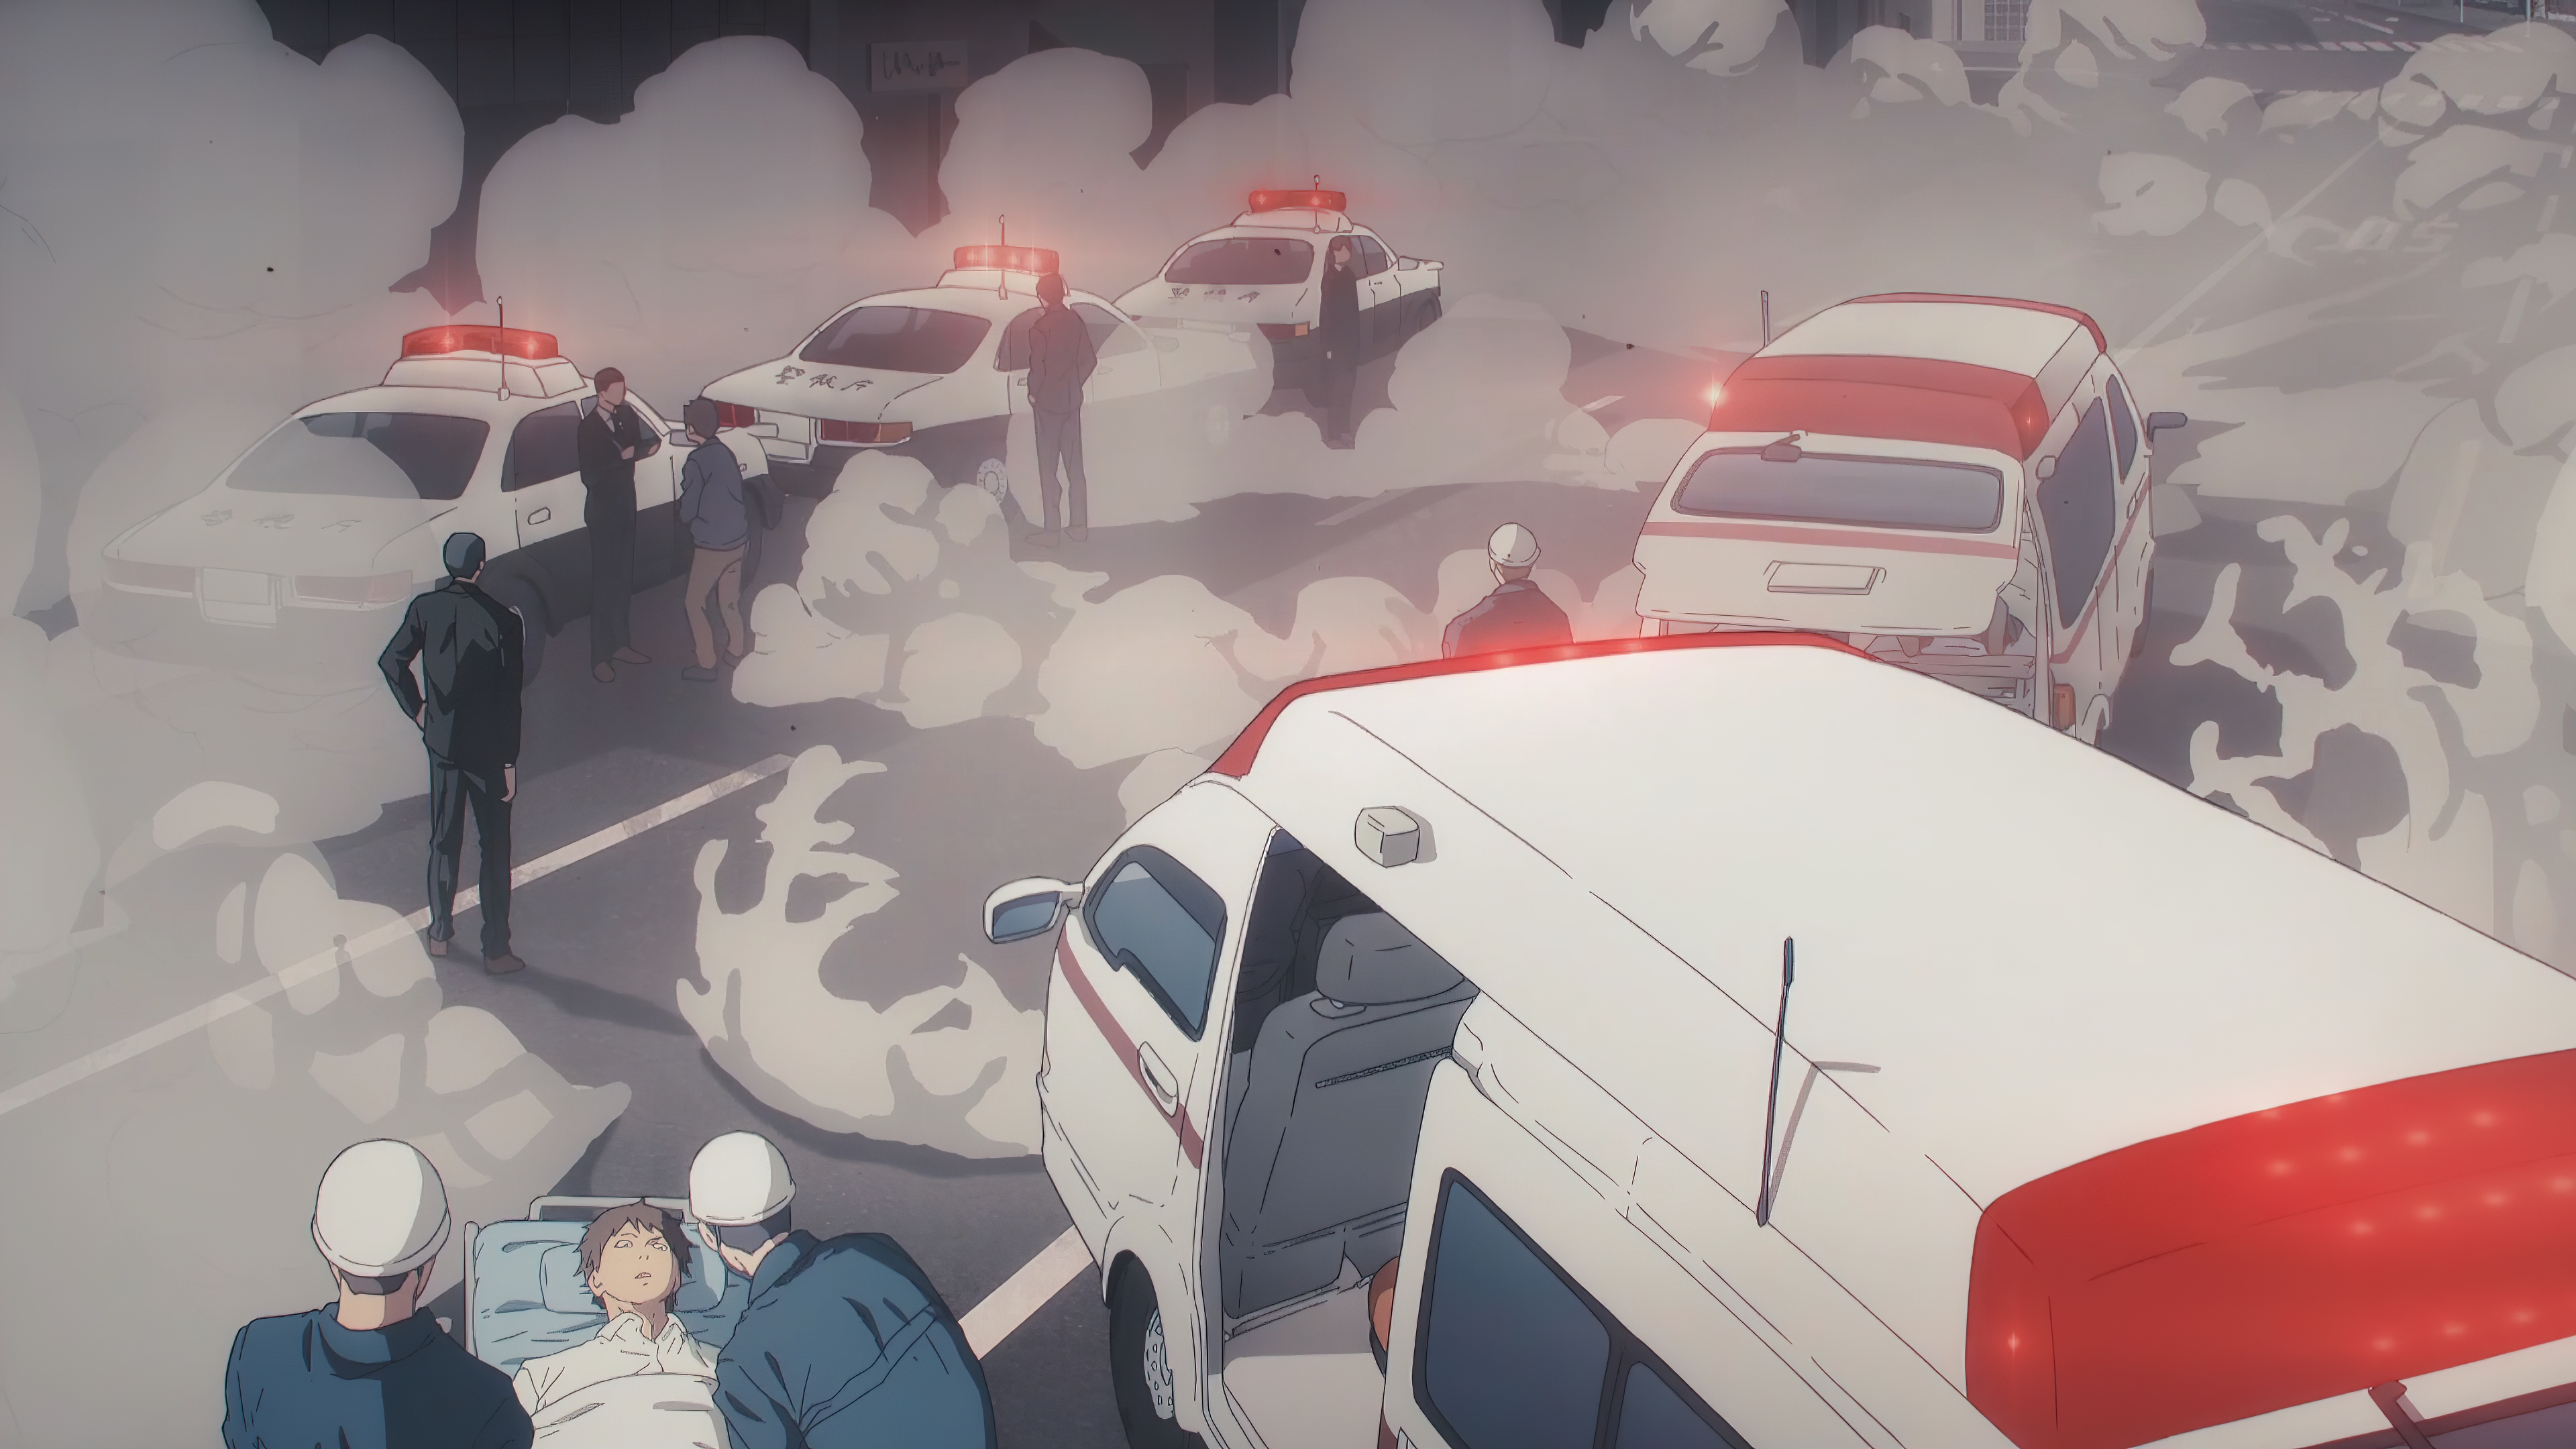 Anime 3840x2160 Chainsaw Man anime 4K Anime screenshot anime boys police cars ambulances smoke